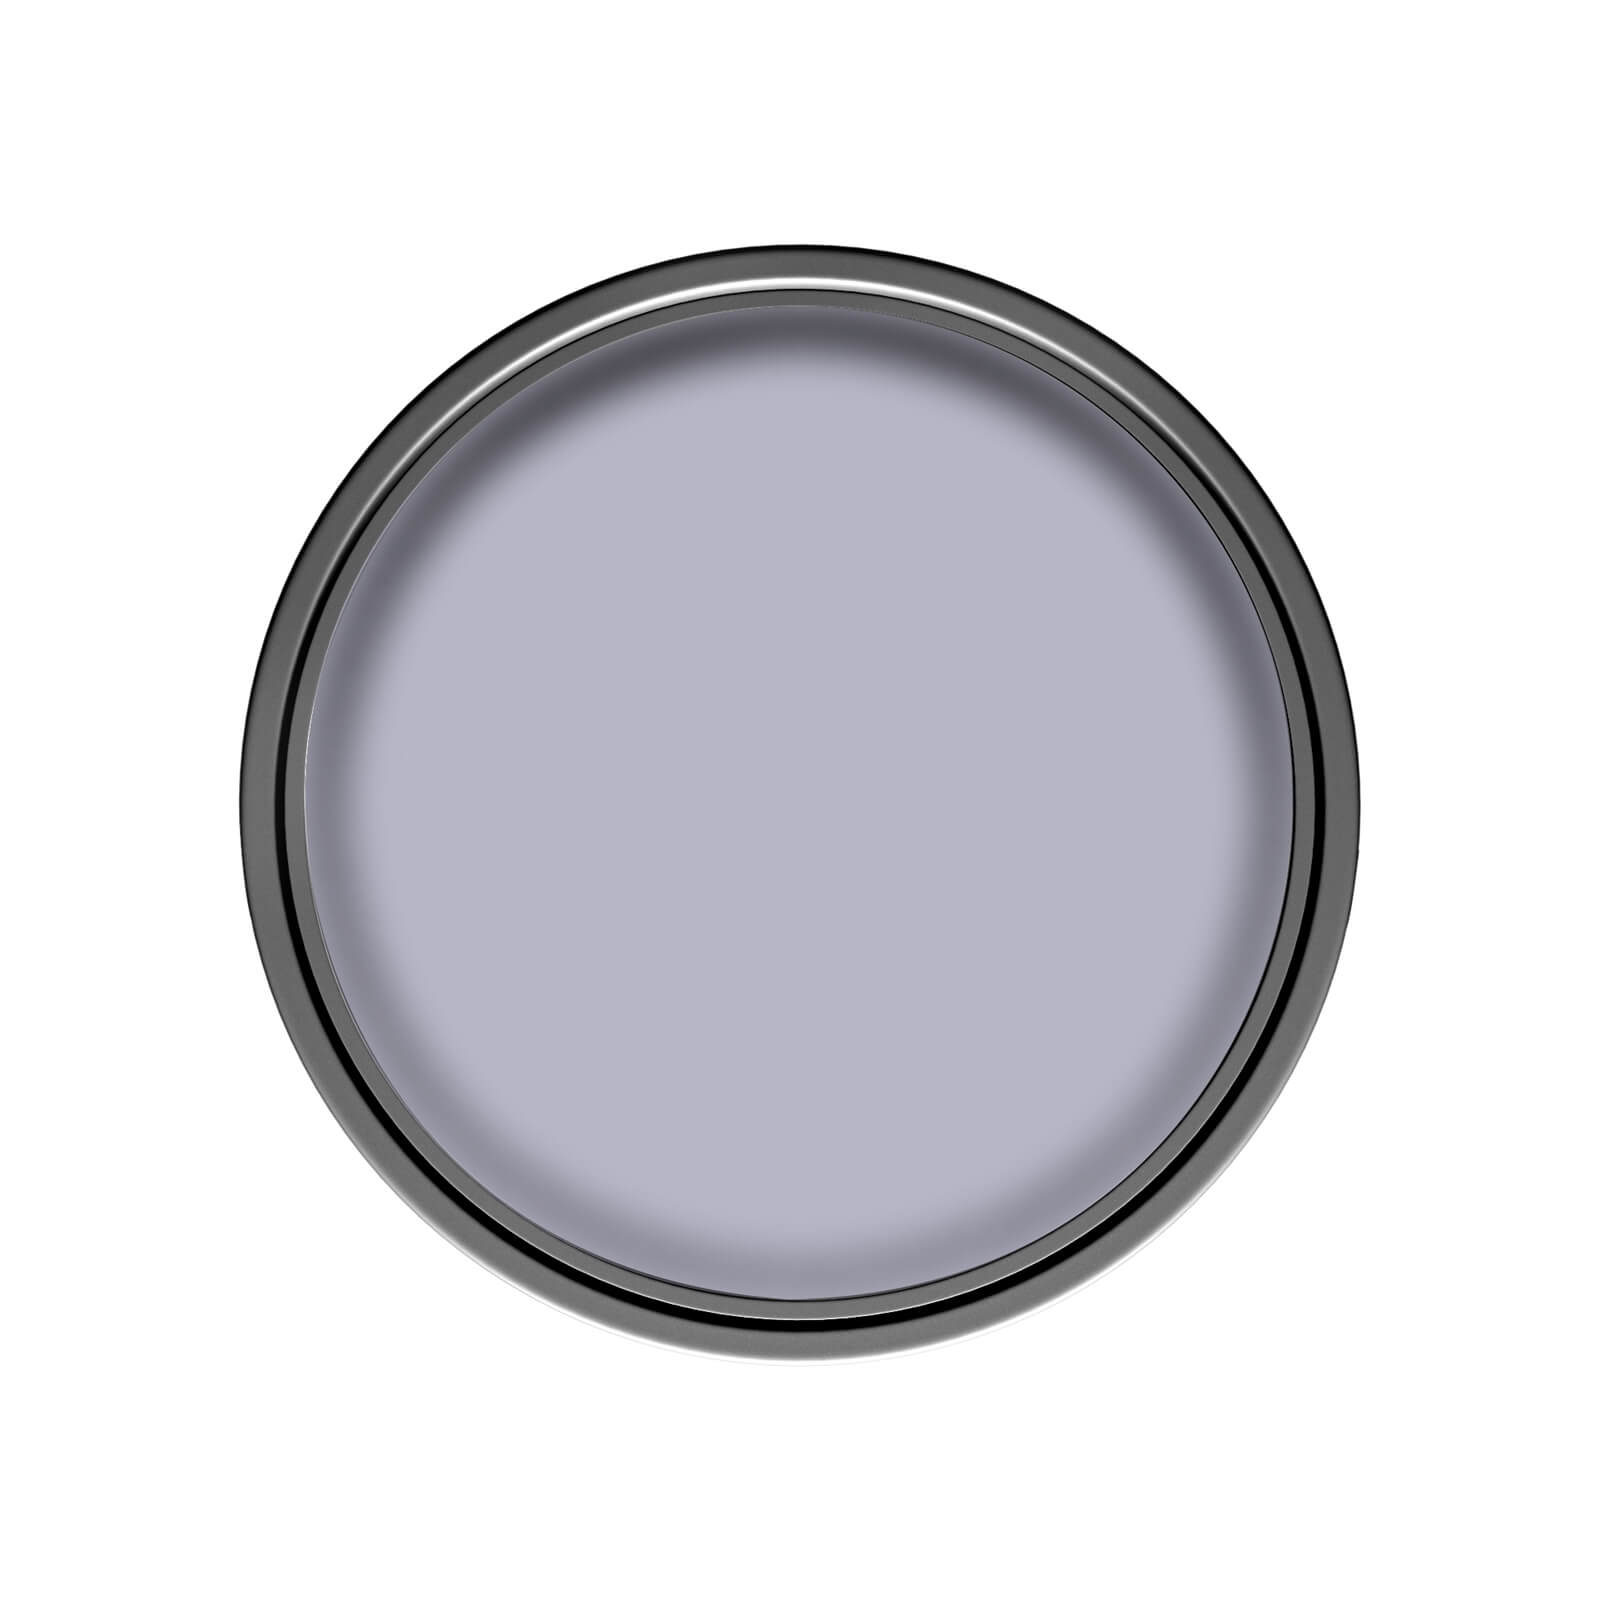 Dulux Matt Emulsion Paint Lavender Quartz - 2.5L